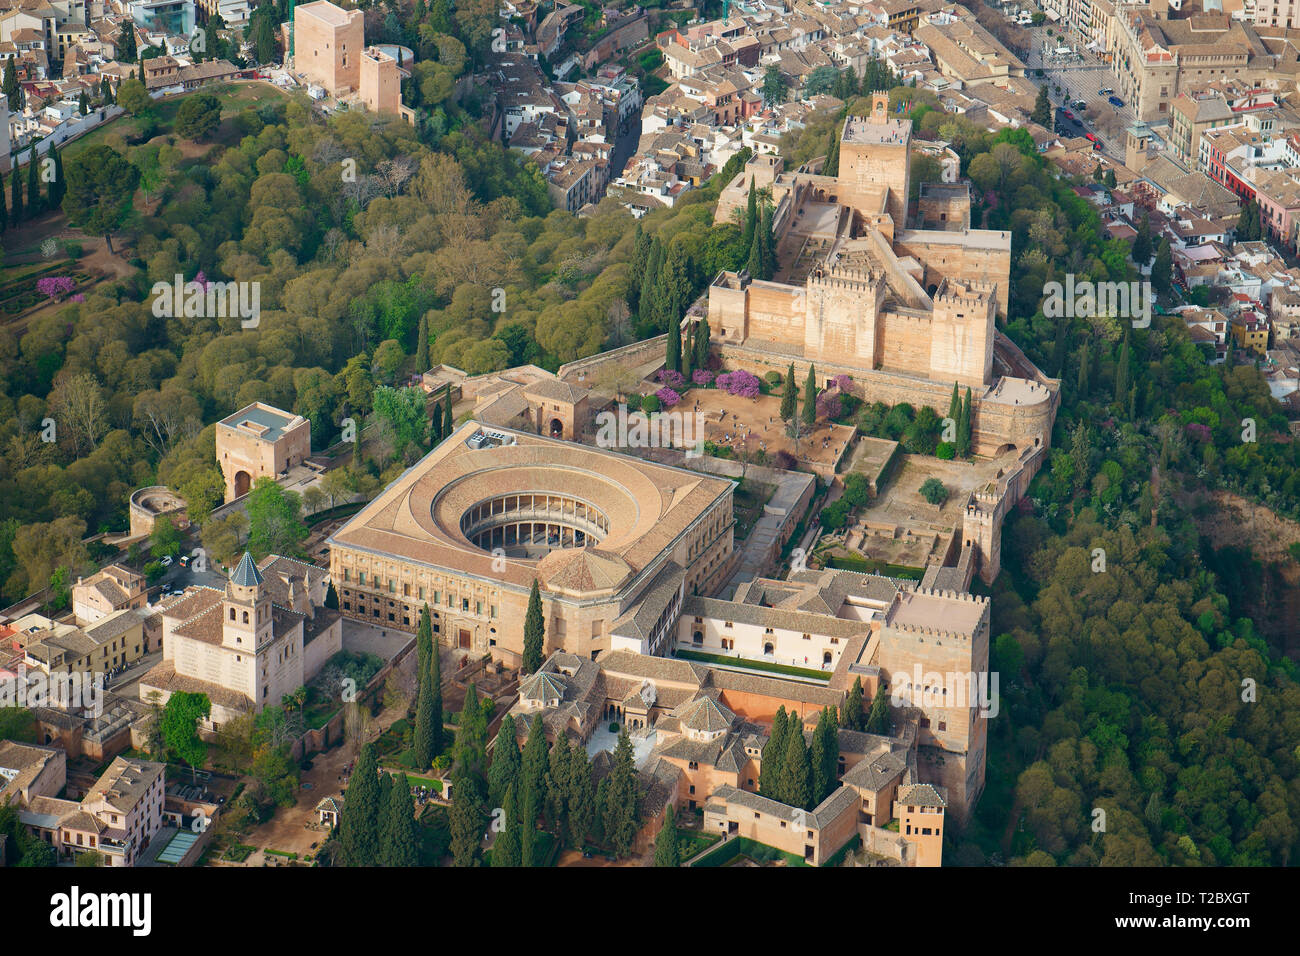 LUFTAUFNAHME. Die Festung Alhambra auf einem Hügel mit Blick auf die Stadt Granada. Andalusien, Spanien. Stockfoto